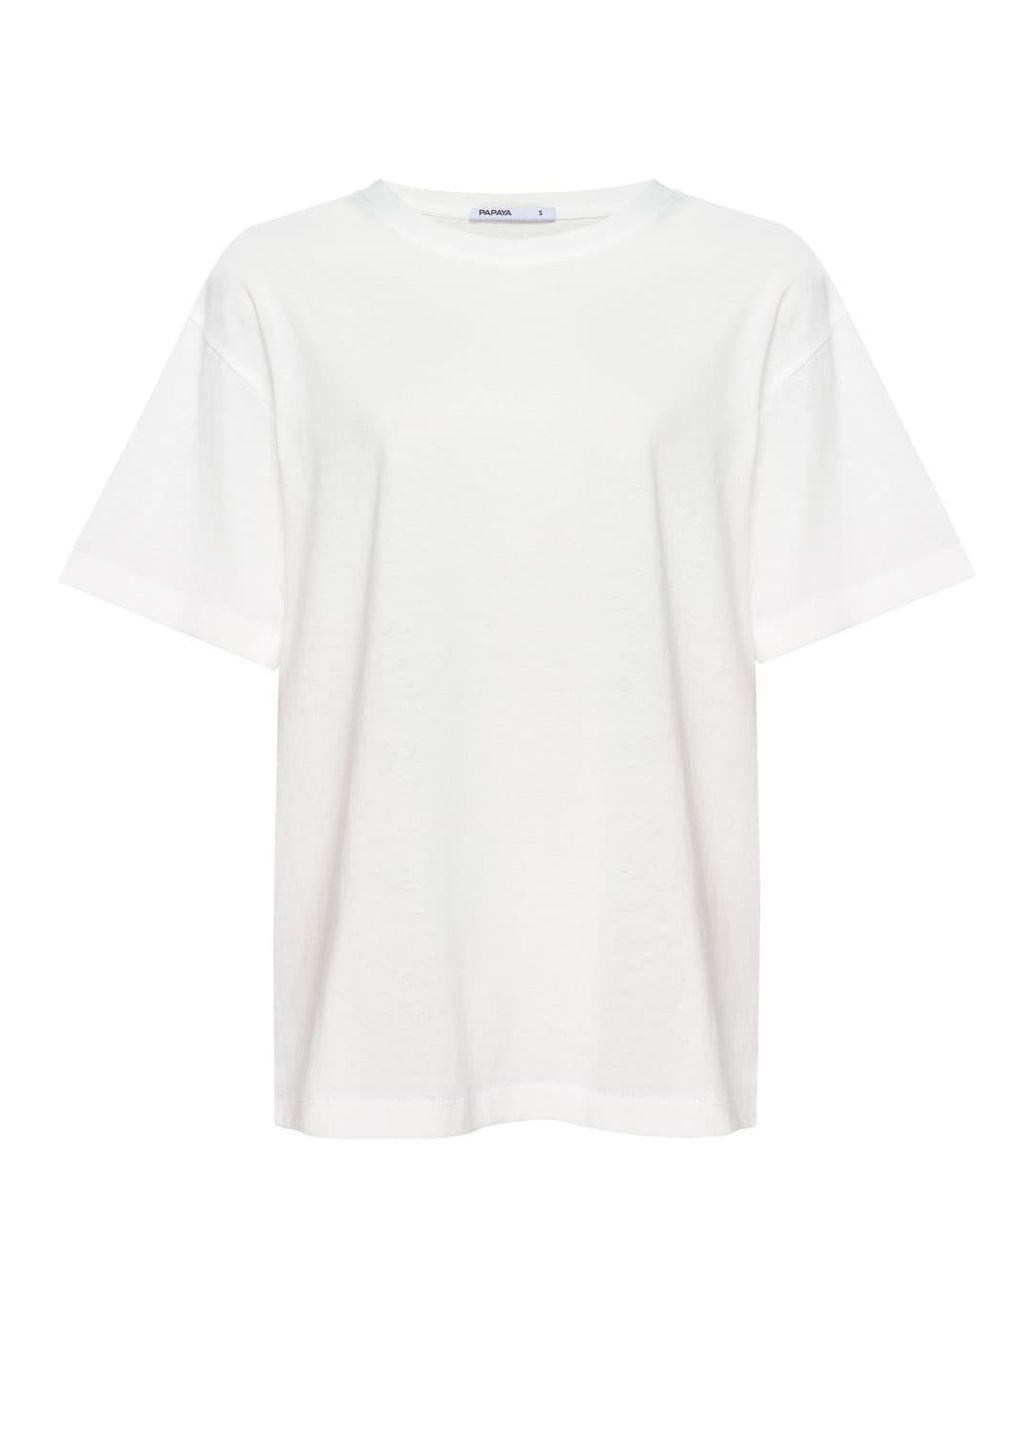 Біла літня футболка oversize 1005-22 Papaya